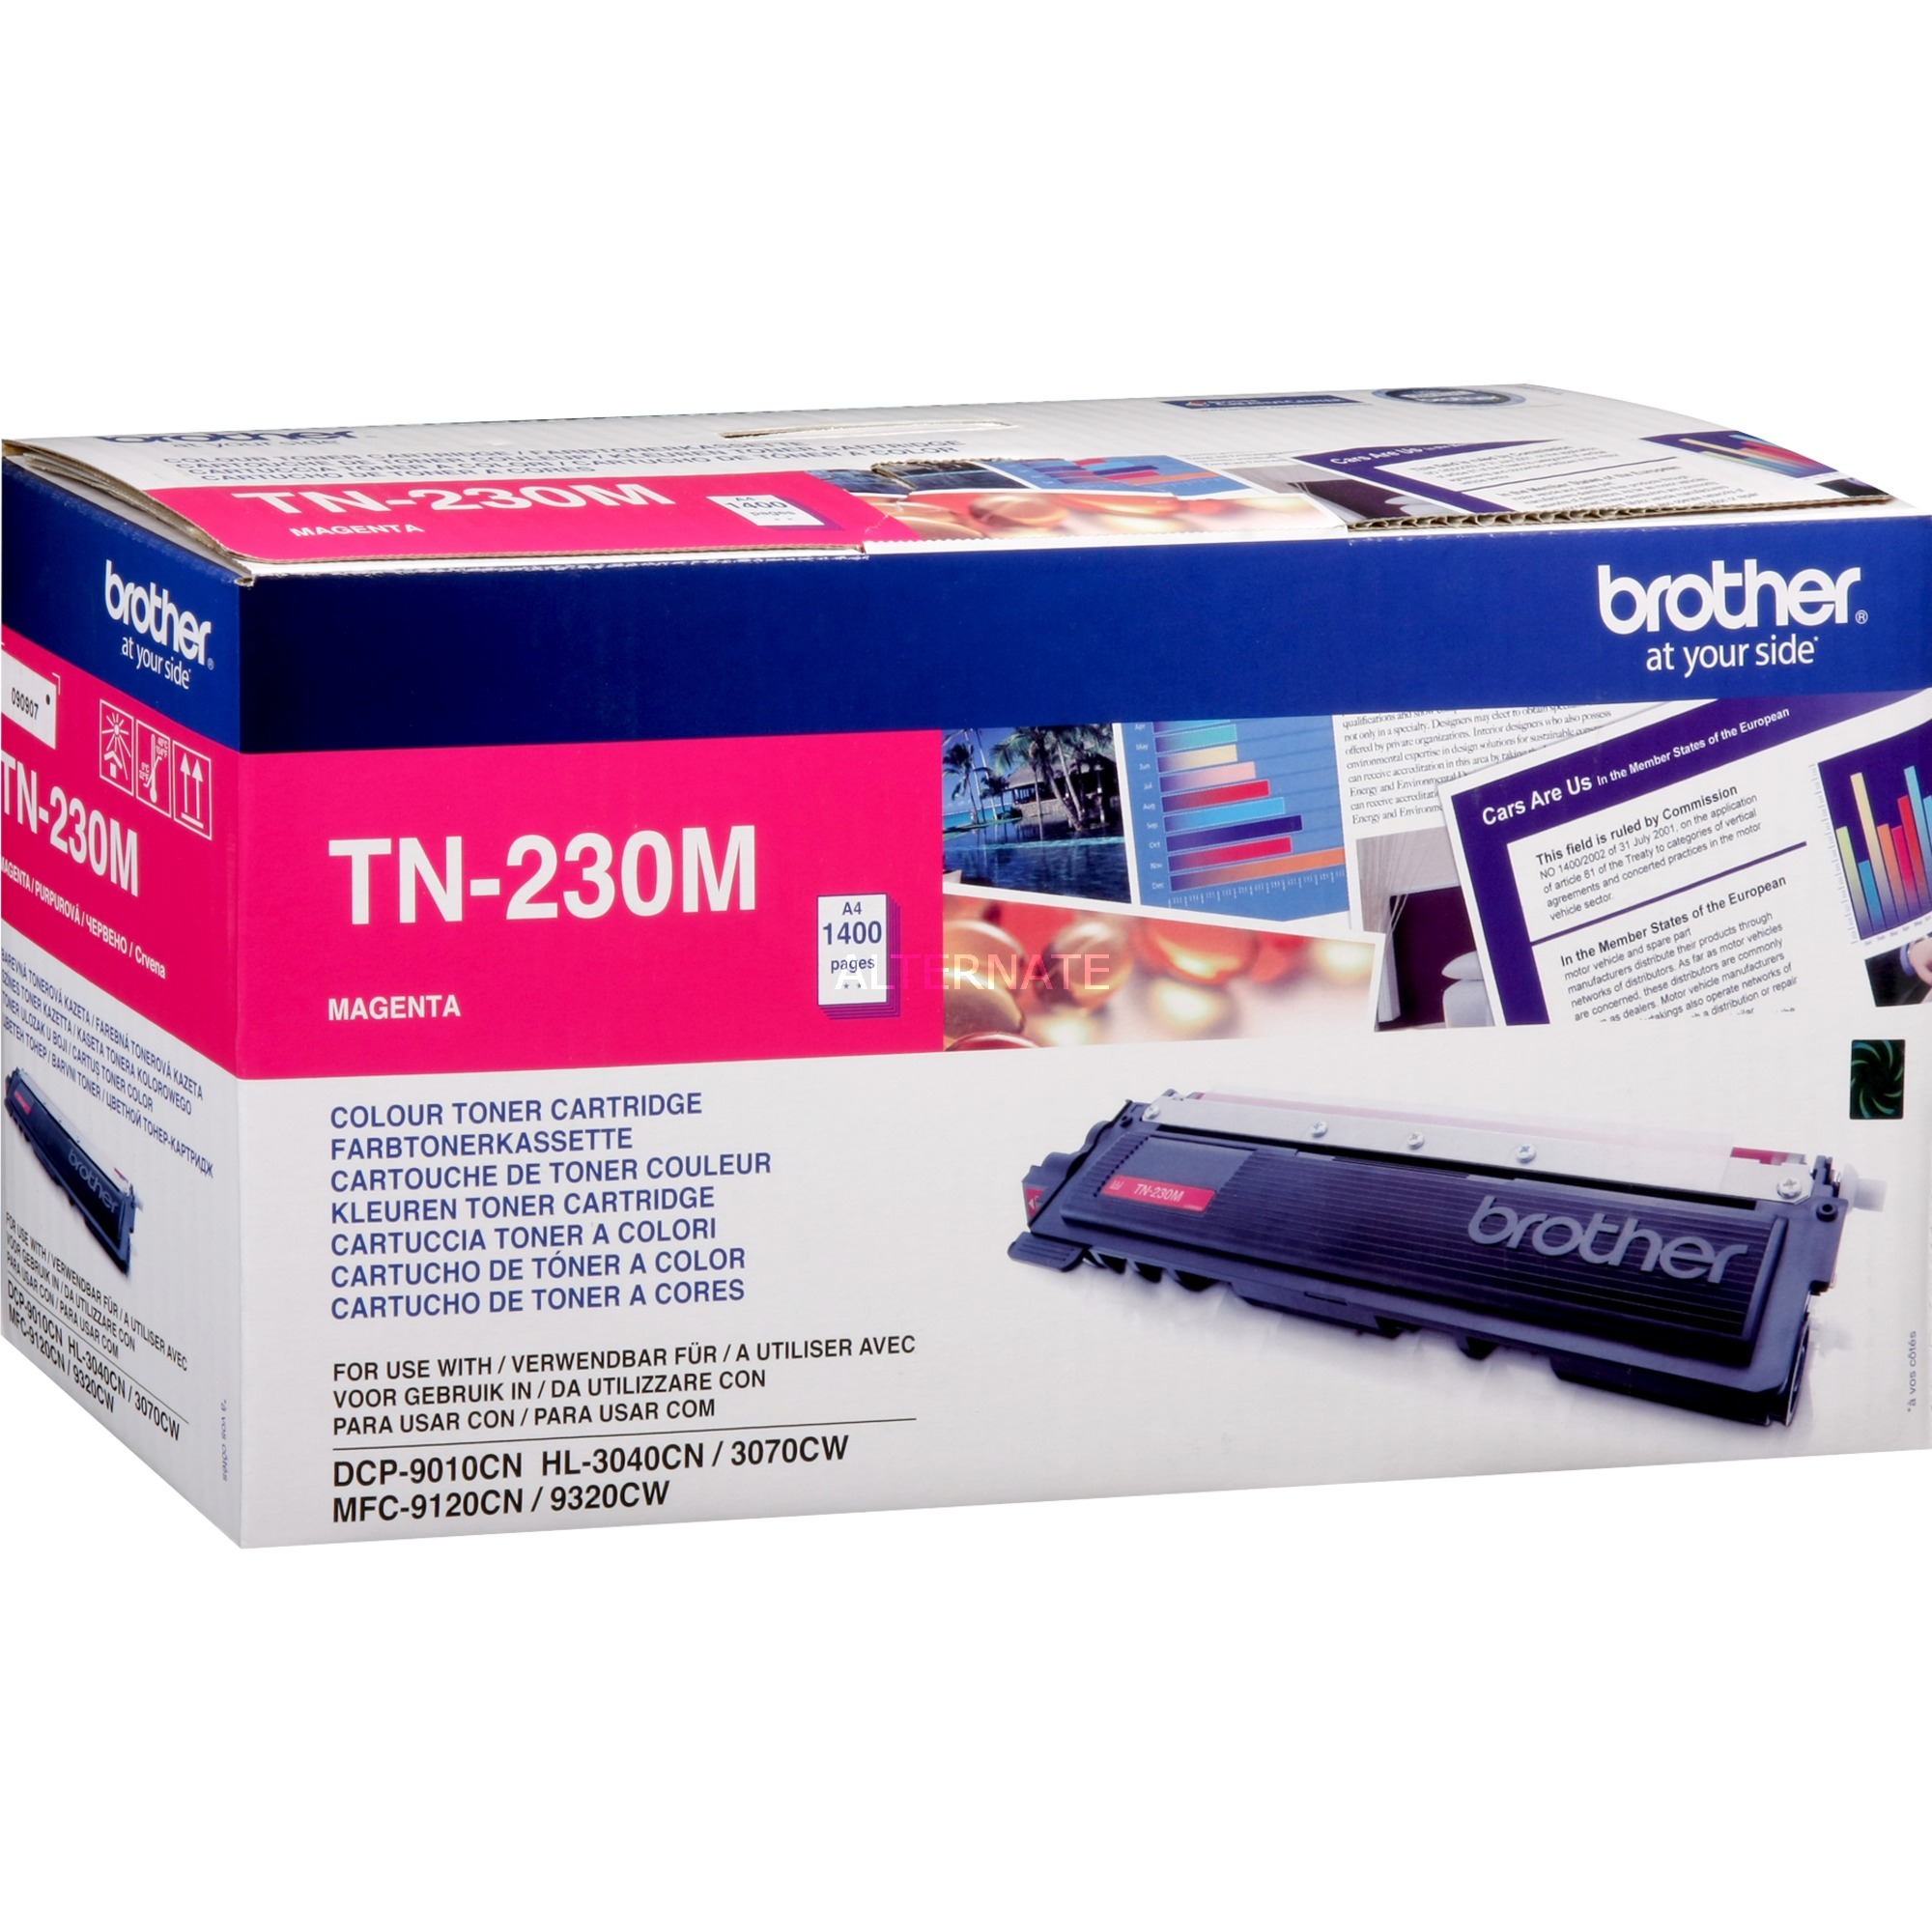 TN-230M kaseta z tonerem Wkład laserowy 1400 strony Purpurowy